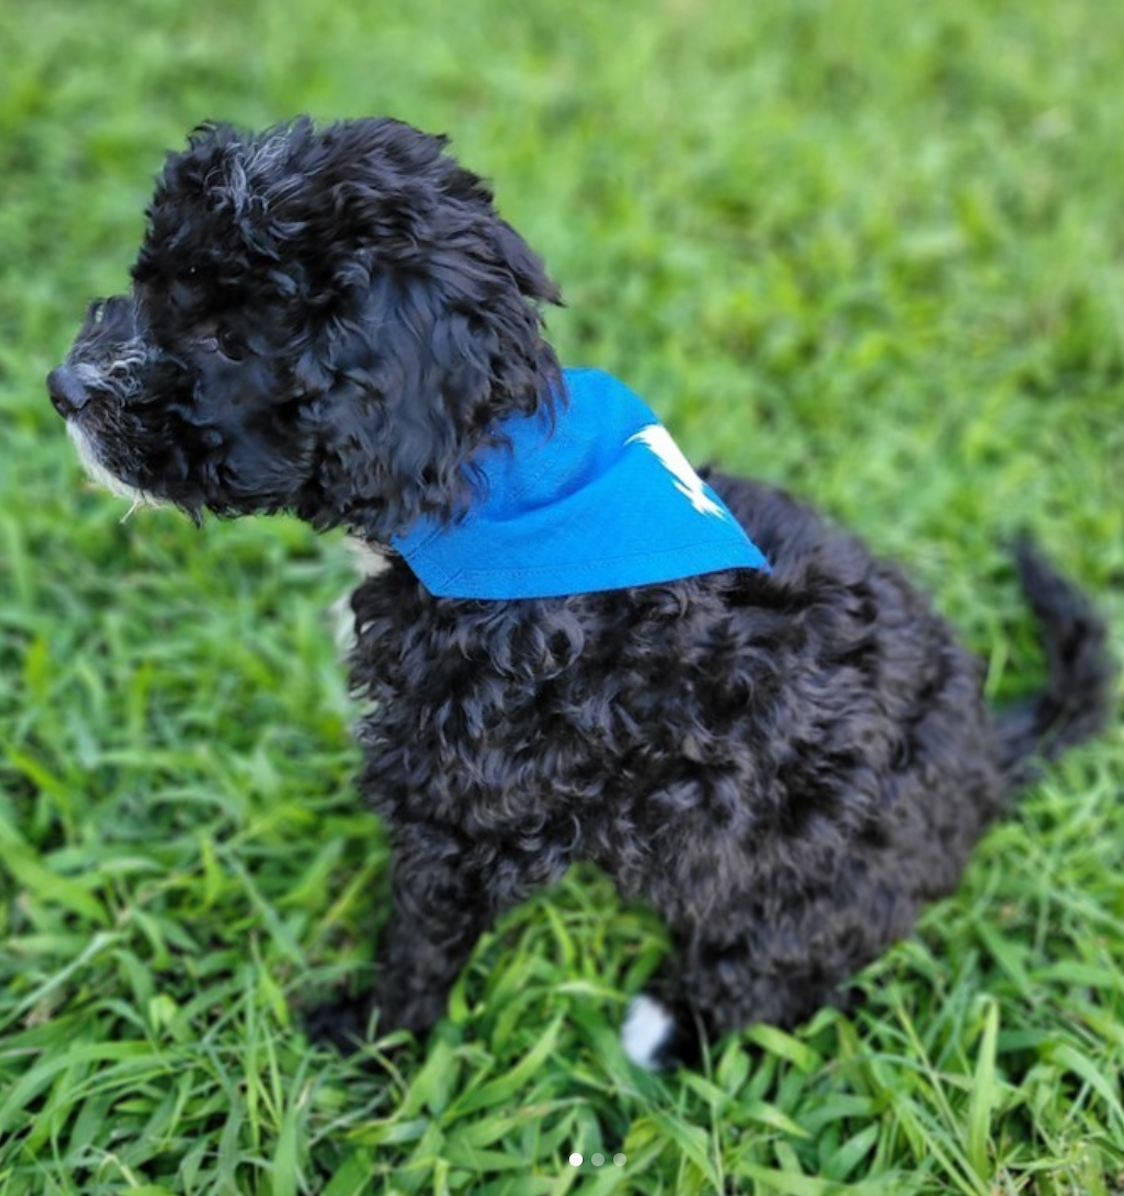 Black puppy wearing blue bandana